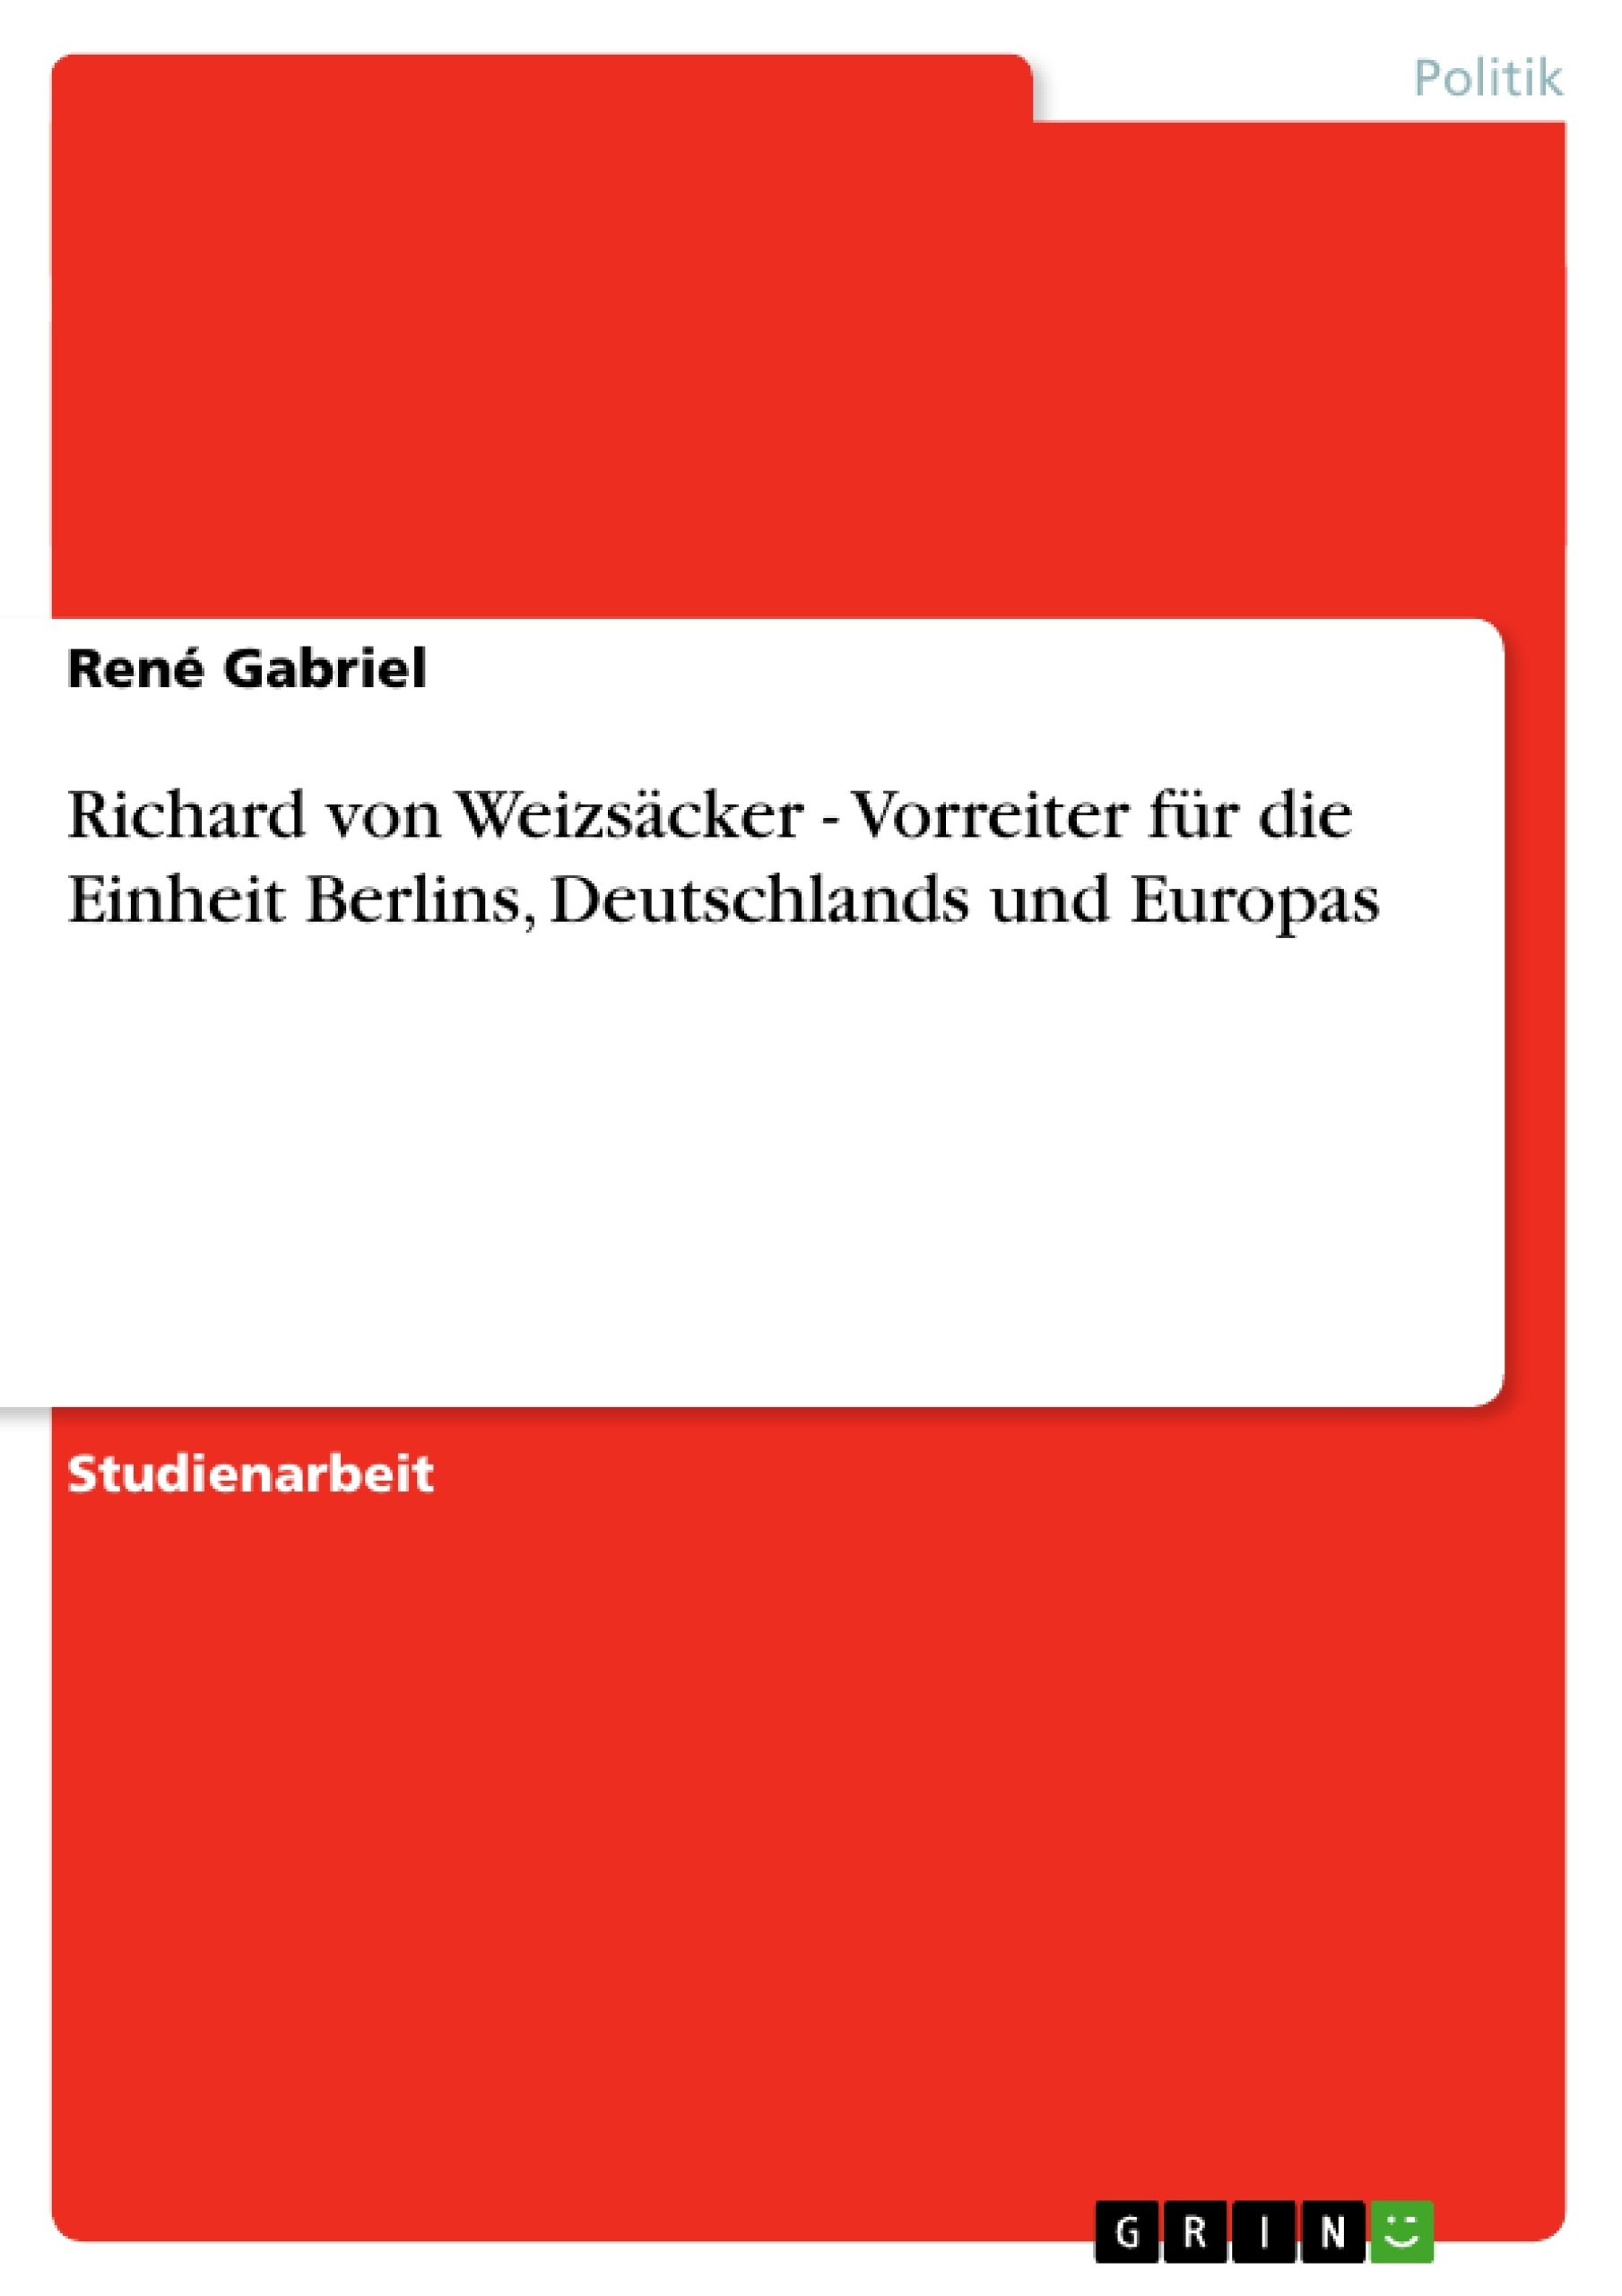 Titre: Richard von Weizsäcker - Vorreiter für die Einheit Berlins, Deutschlands und Europas